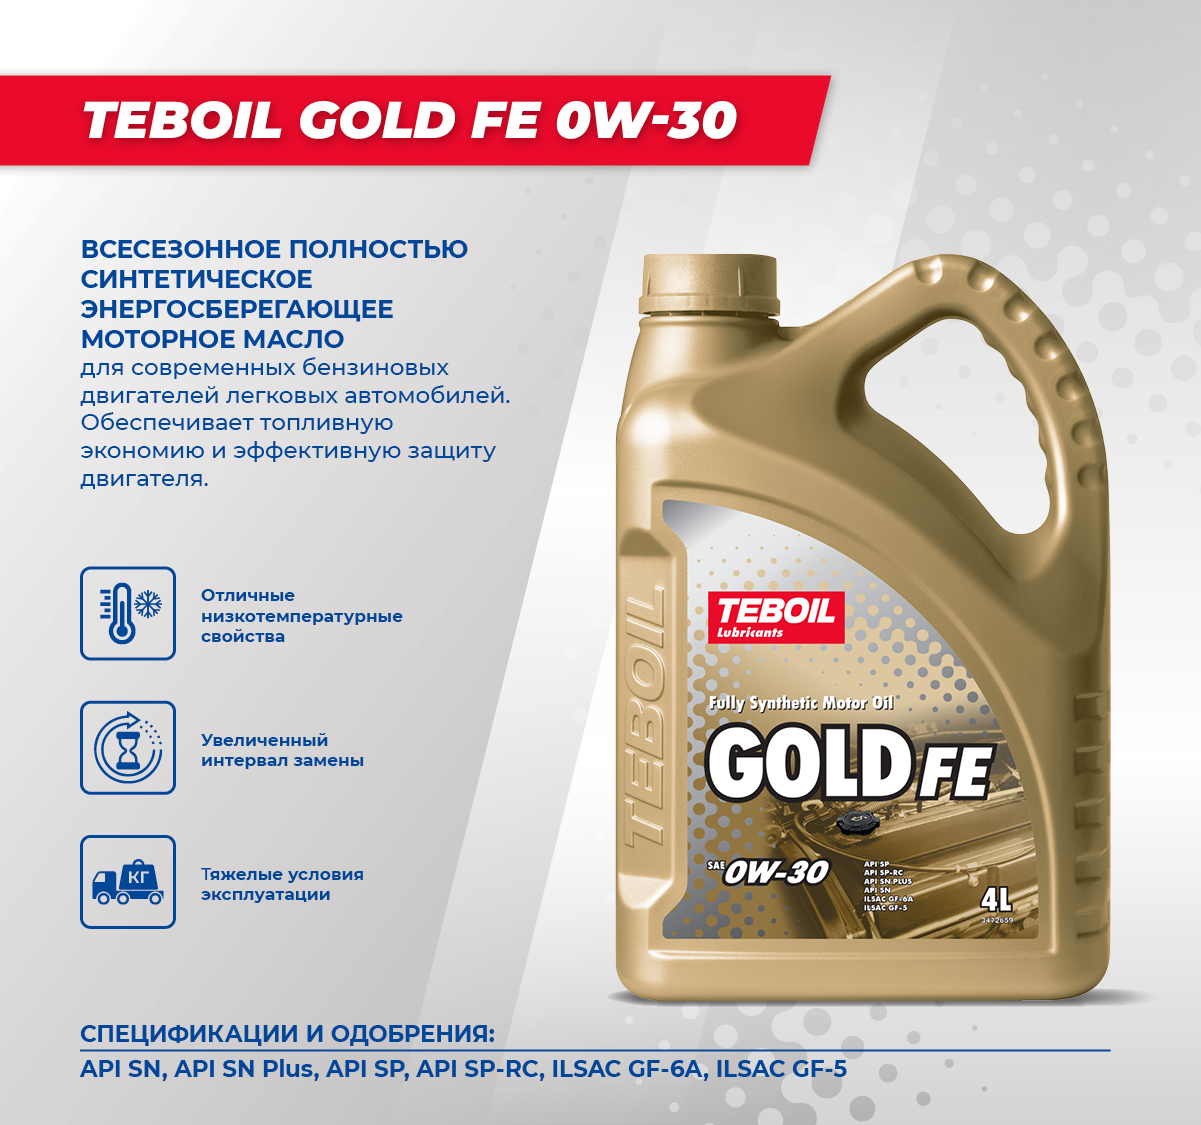 Teboil gold s. Тебойл 5w40 Gold. Моторное масло Тебойл 5w40. Teboil Gold l 5w-40. Teboil Gold Fe 5w-30, 4 л 3470594.